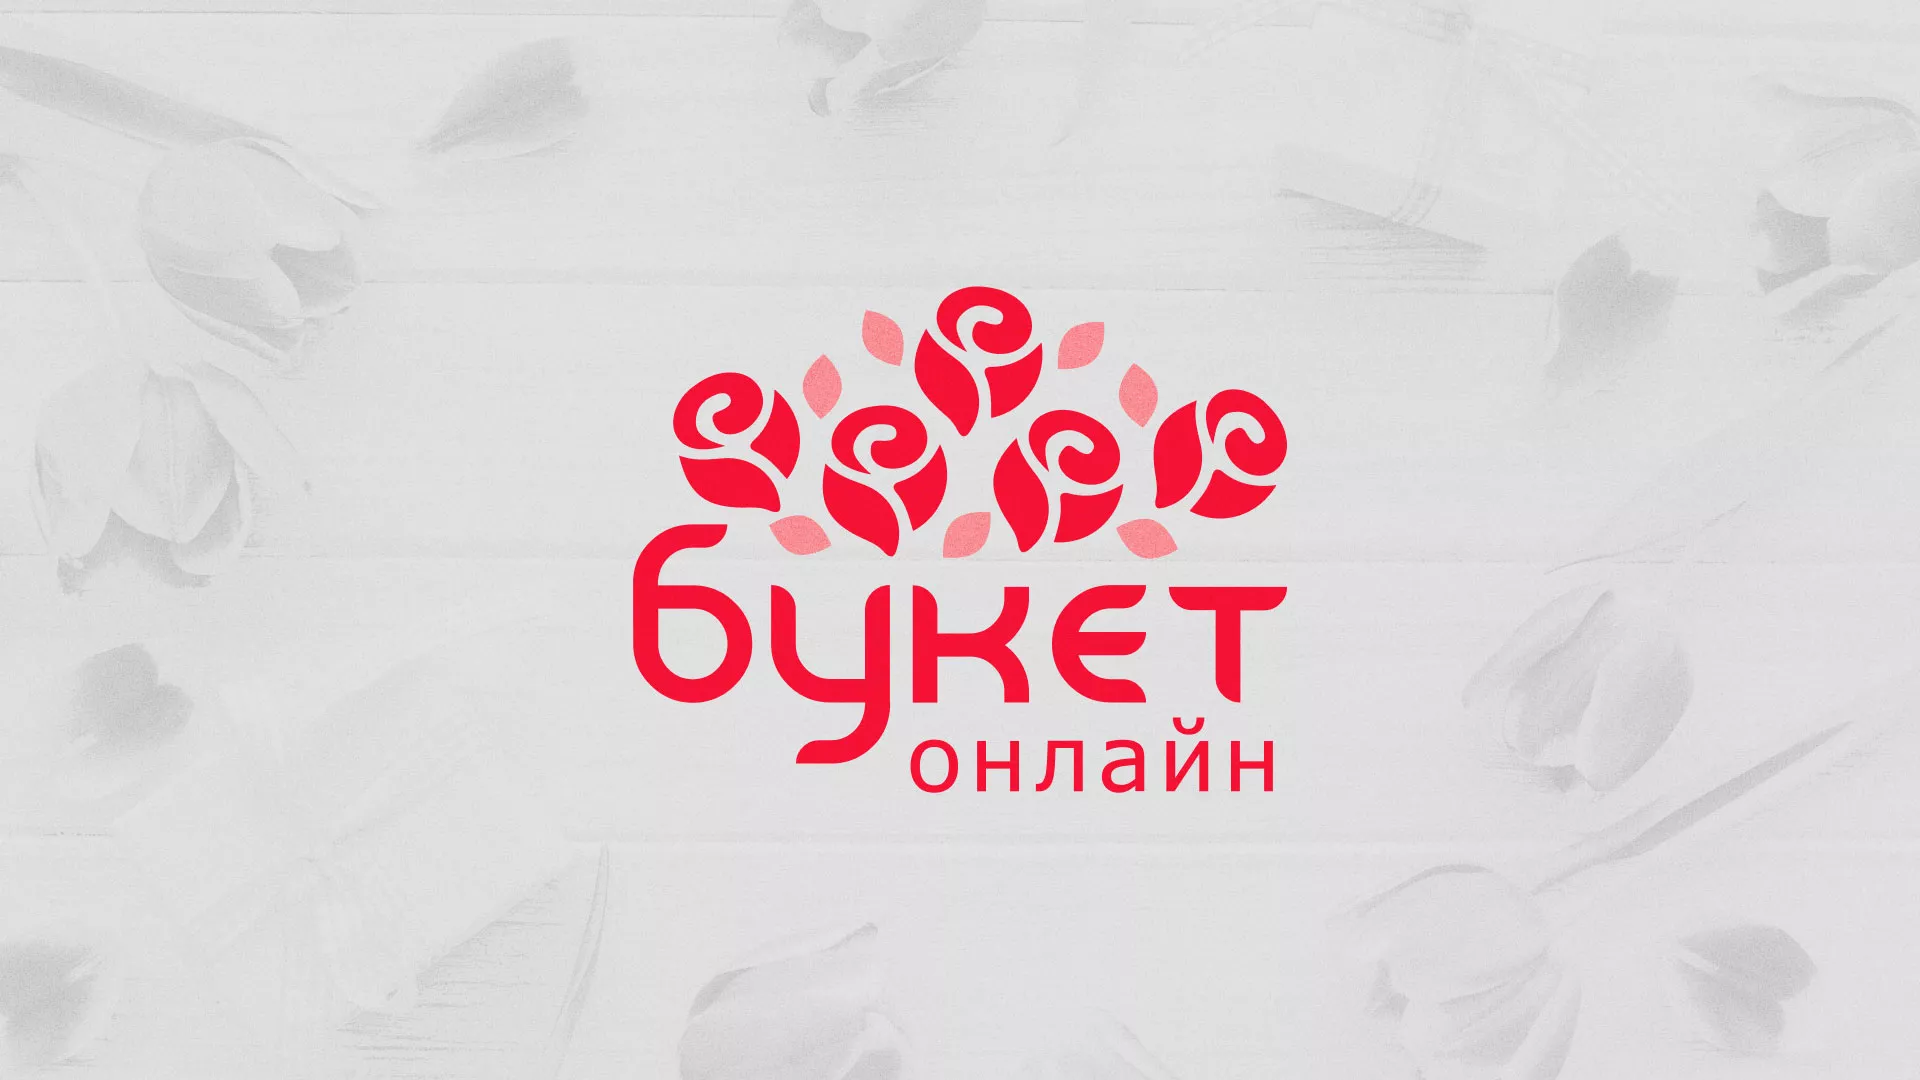 Создание интернет-магазина «Букет-онлайн» по цветам в Черемхово